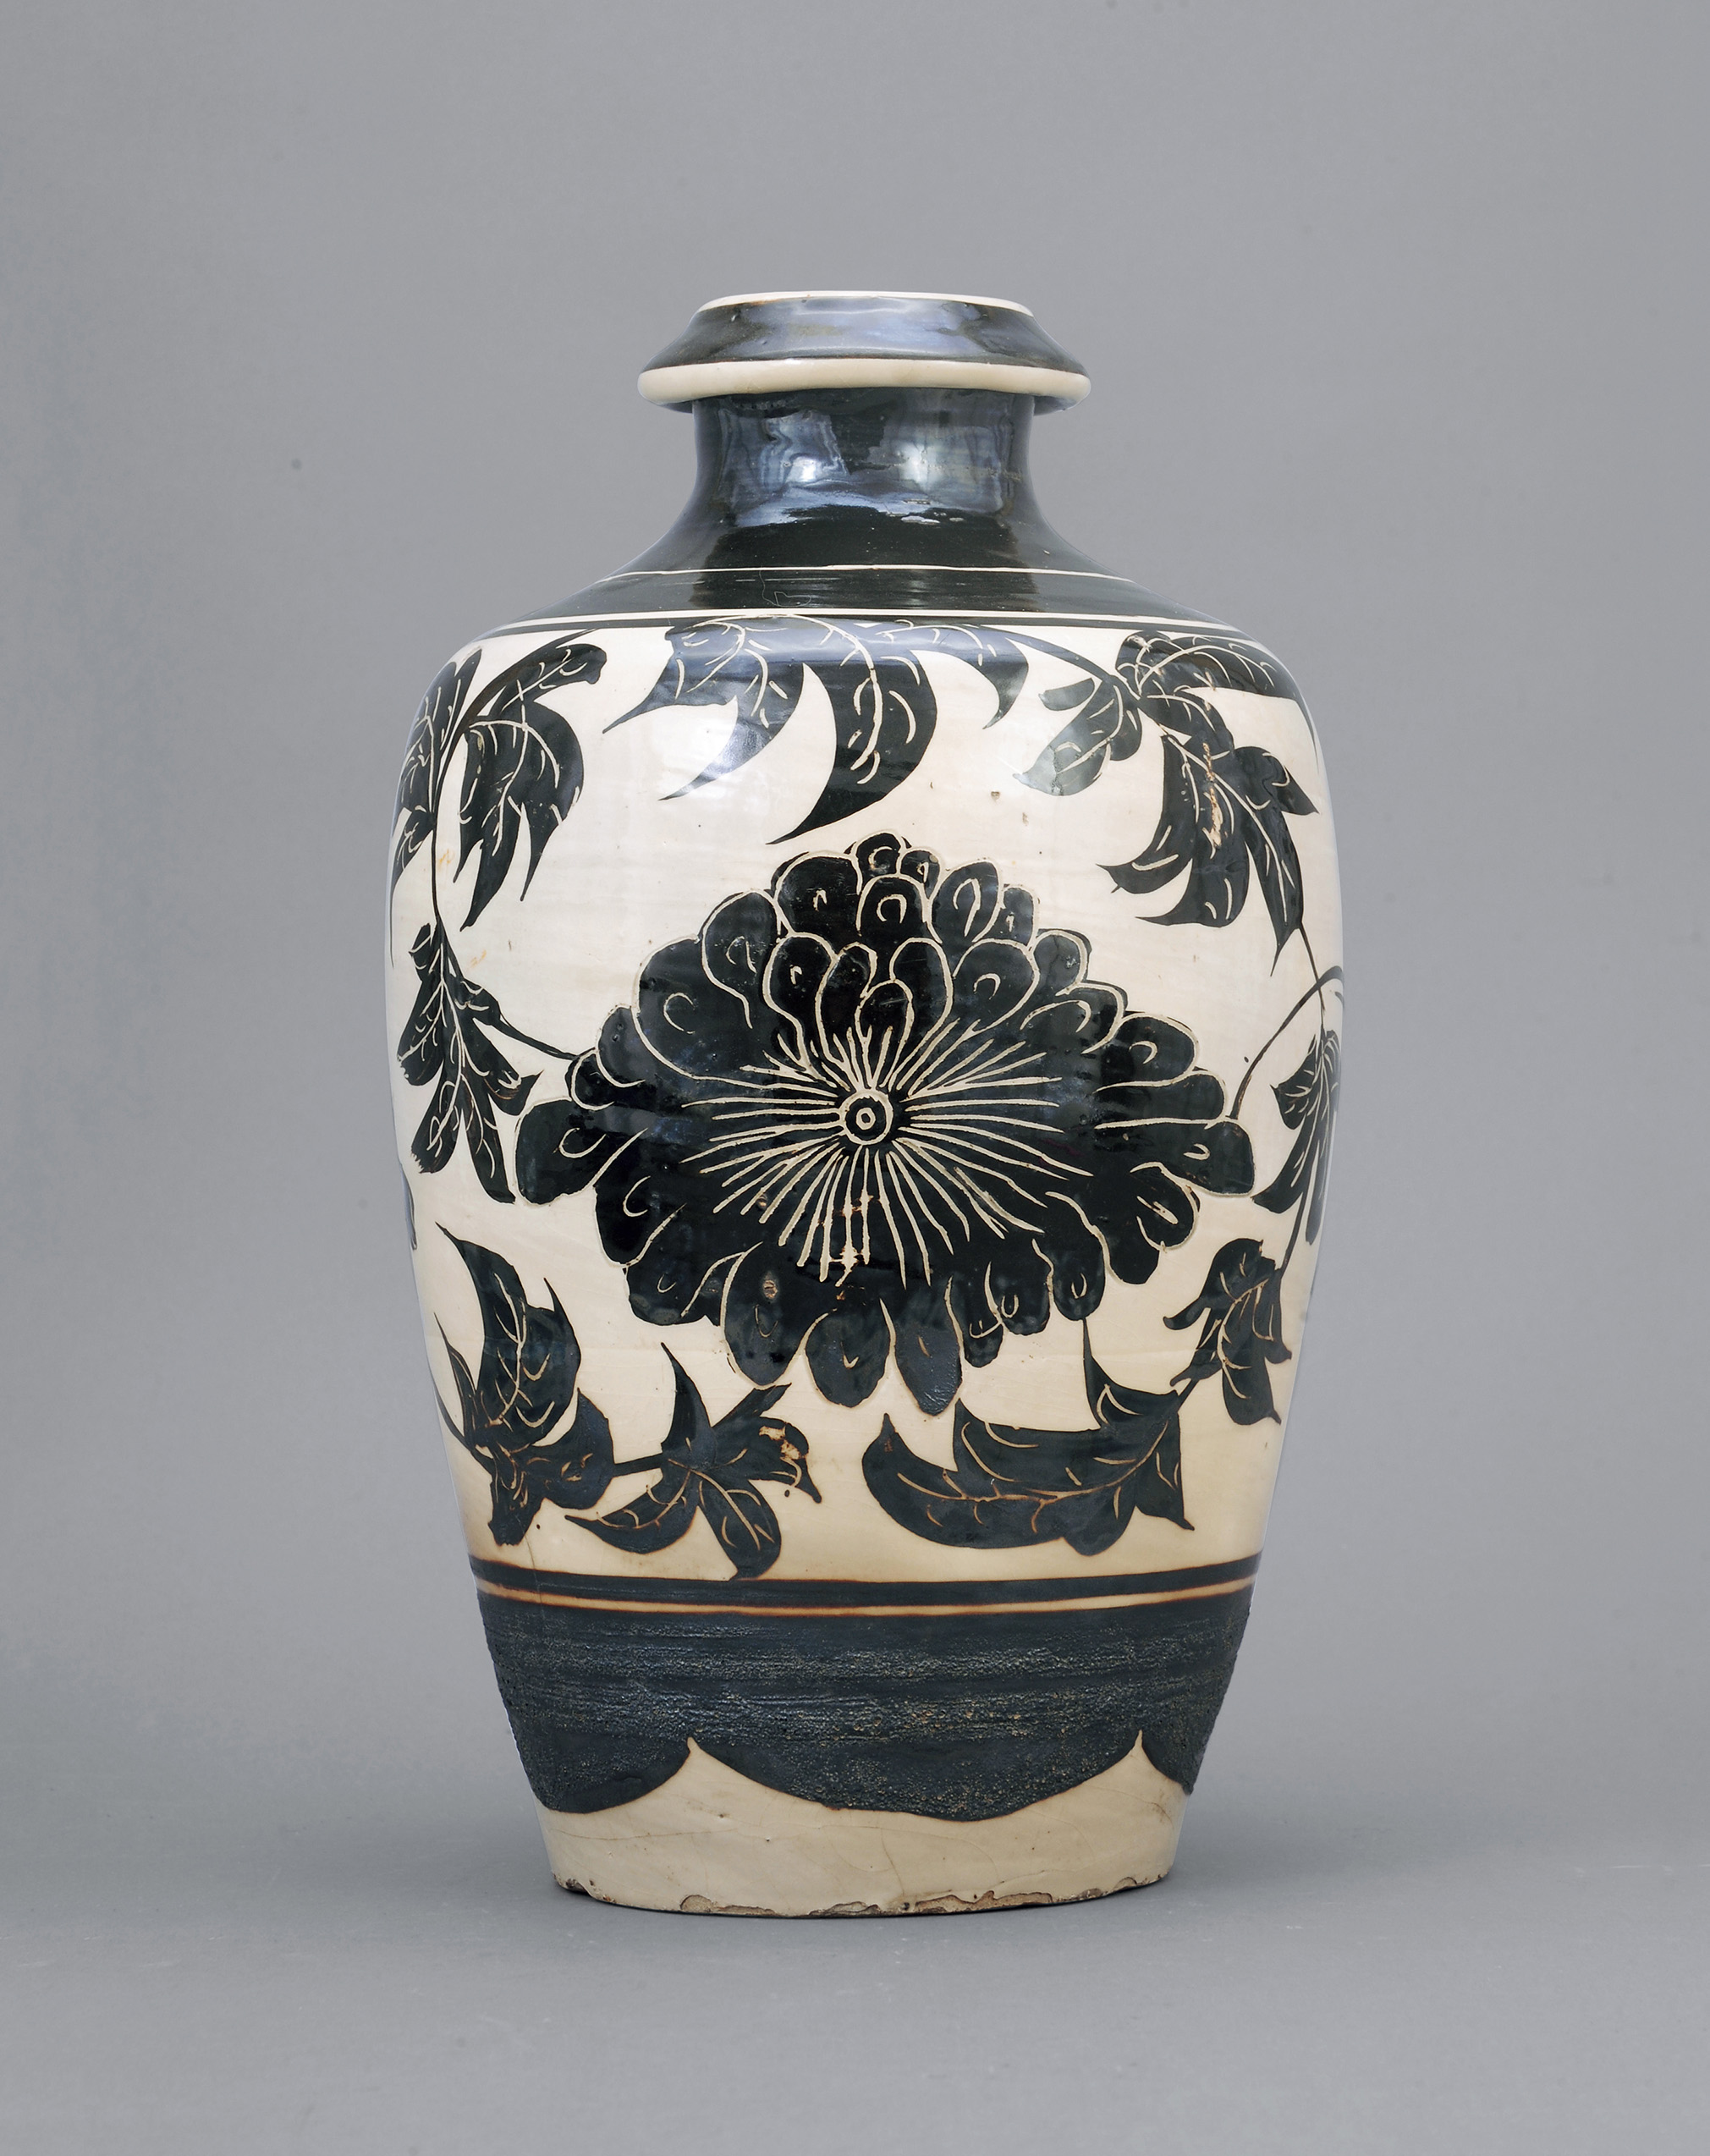 宋磁州牡丹纹瓶来源多伦多博物馆旧藏